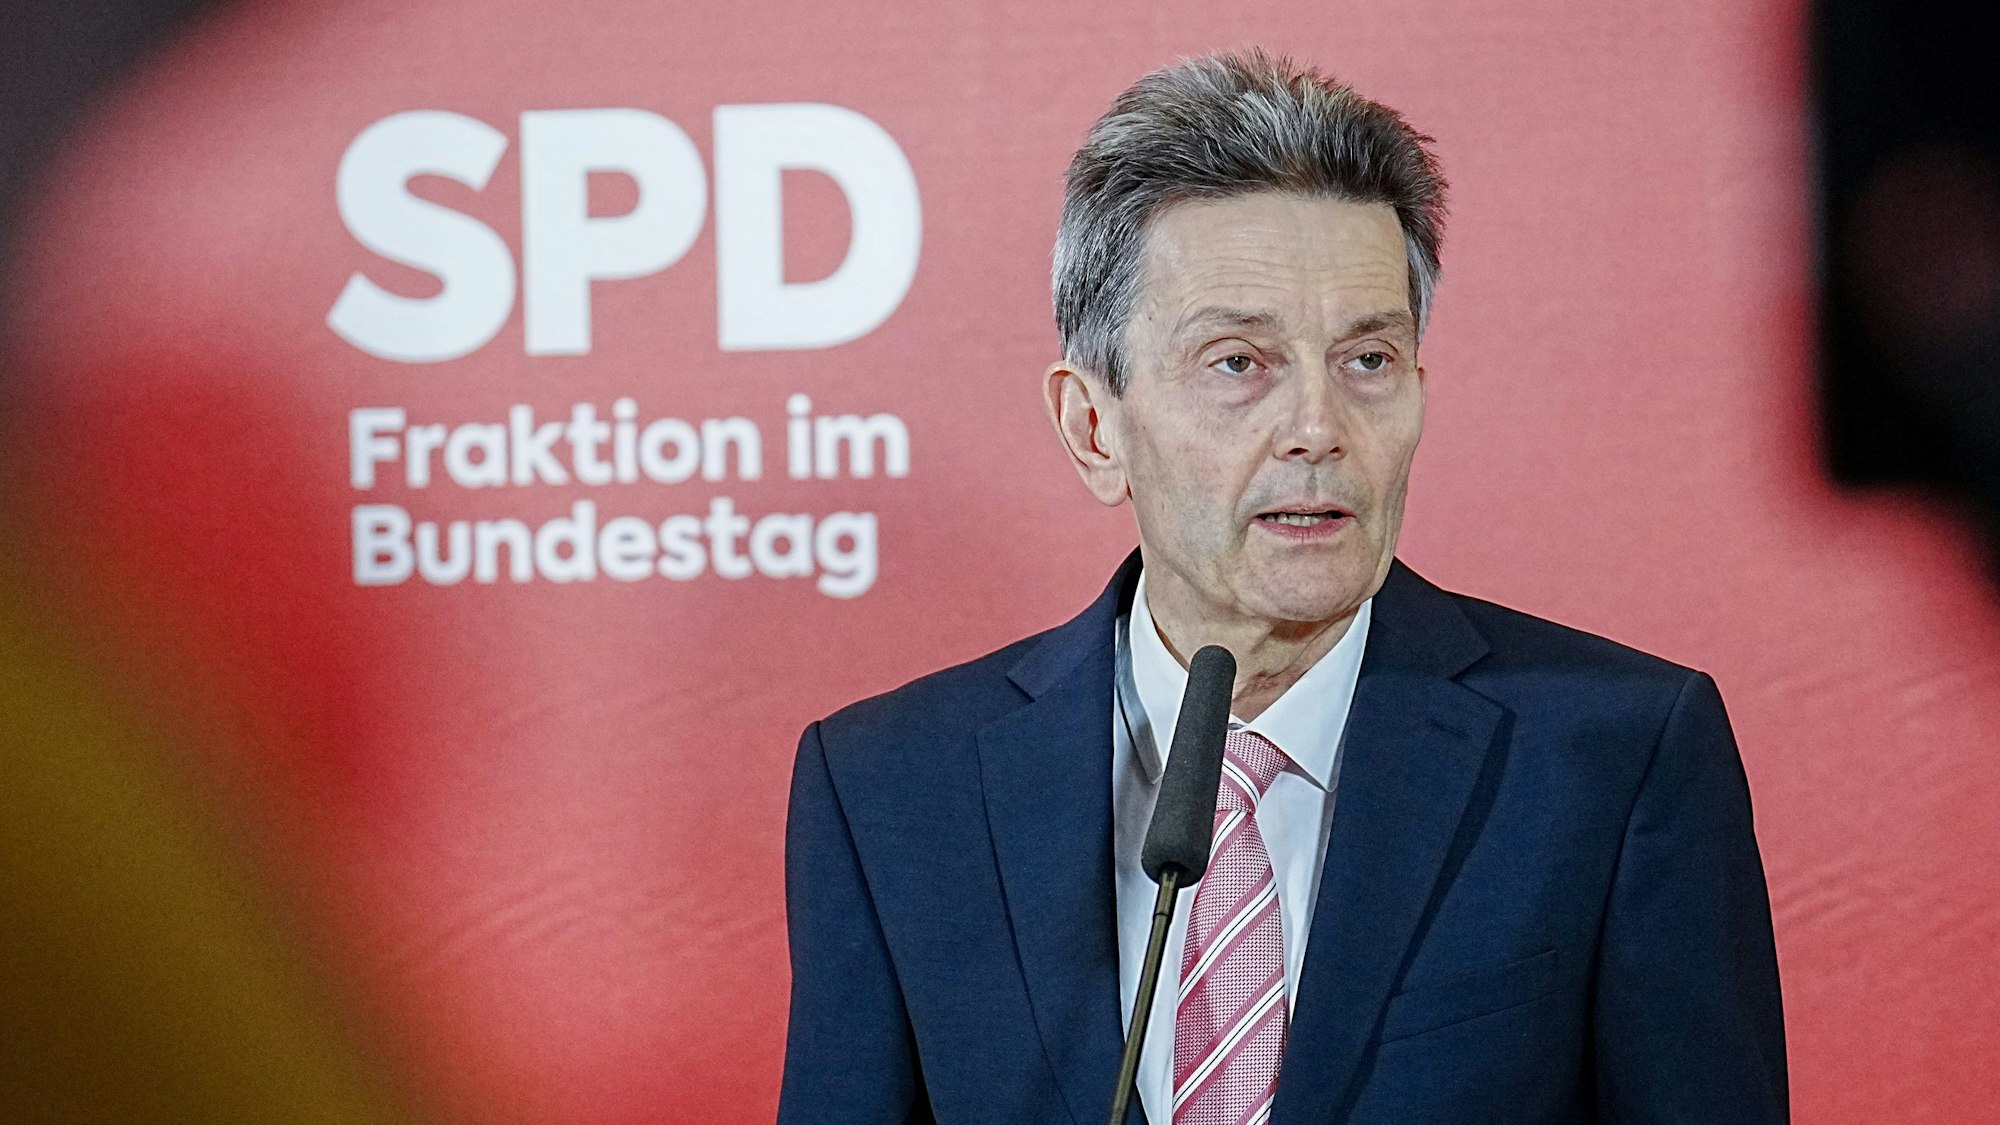 Rolf Mützenich, Vorsitzender der SPD-Bundestagsfraktion, hat in einem Brief die Kritiker der Bundesregierung scharf kritisiert. (Archivbild)